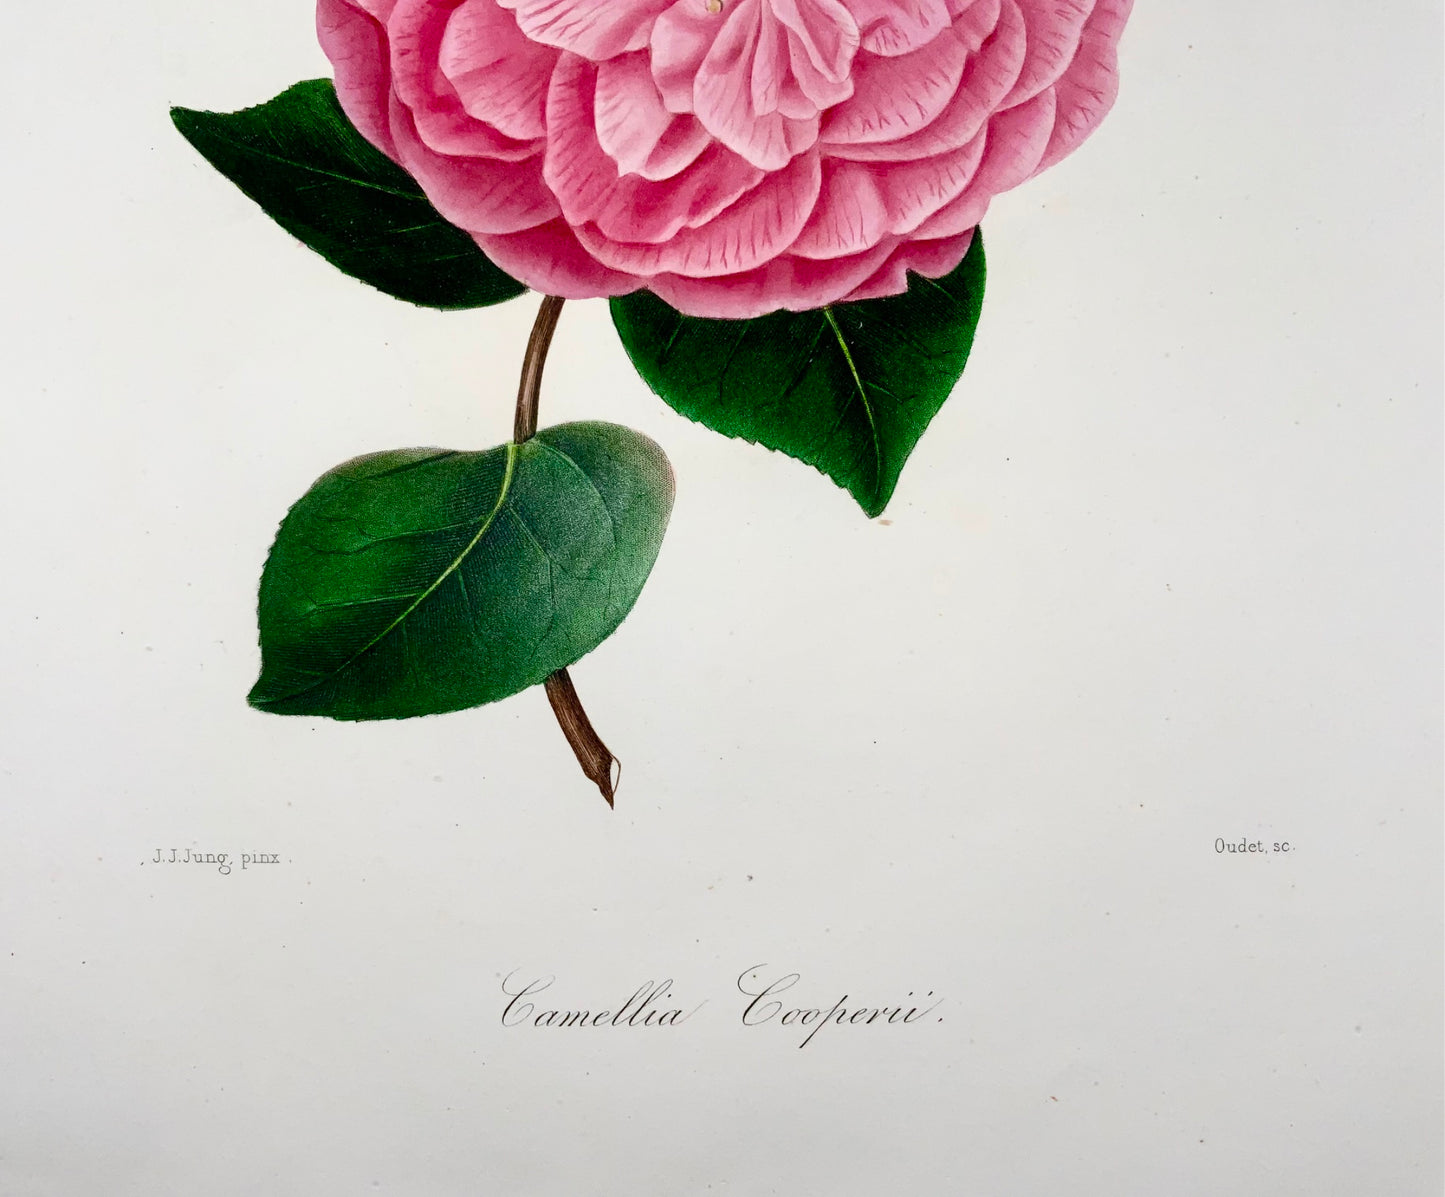 1841 Camelia Cooperii [Camellia], disegnata da JJ Jung, incisa da Oudet, Berlèse, Botanica